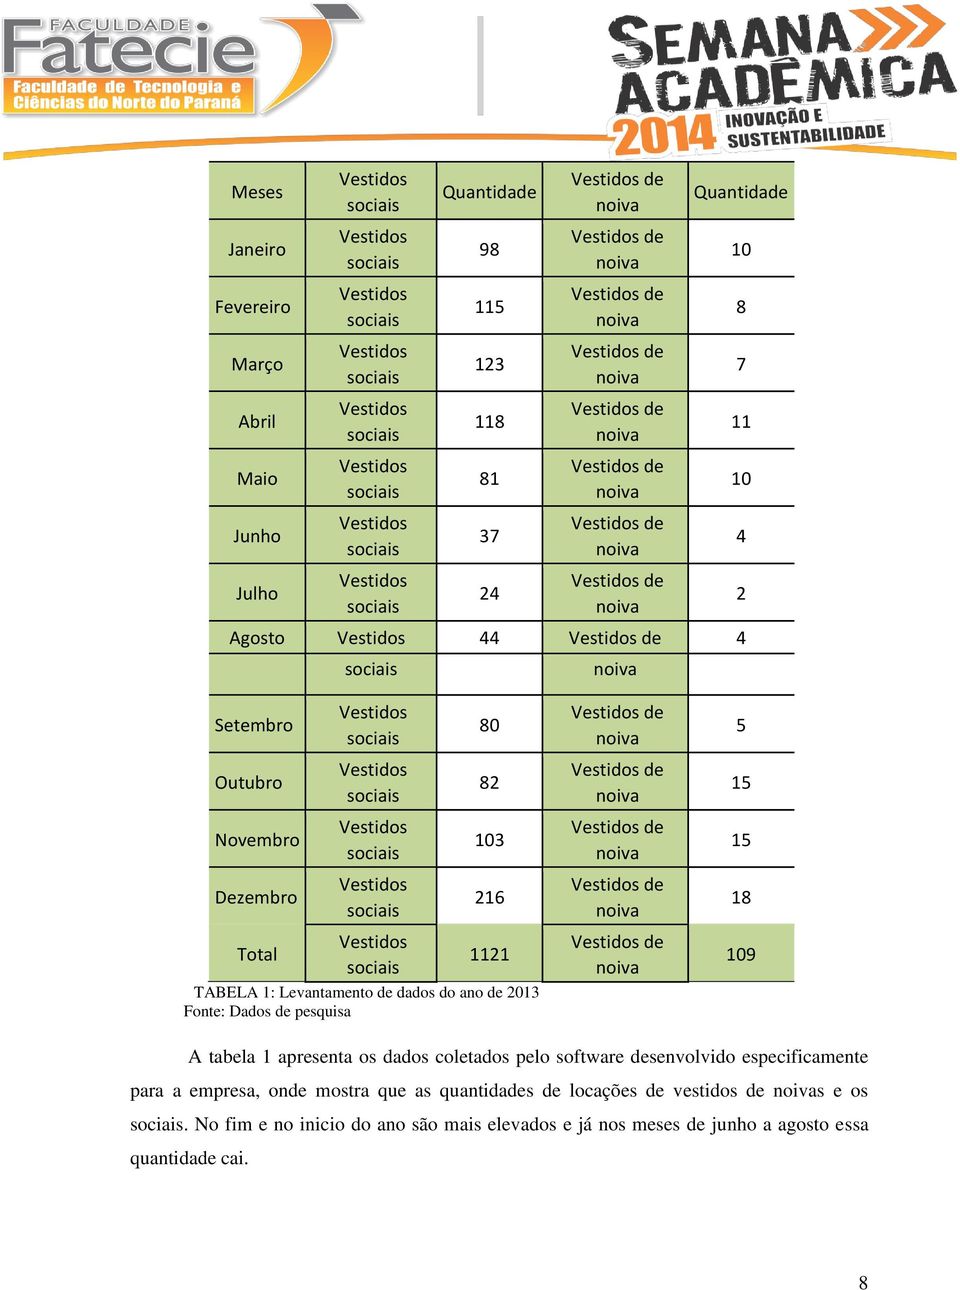 9 A tabela 1 apresenta os dados coletados pelo software desenvolvido especificamente para a empresa, onde mostra que as quantidades